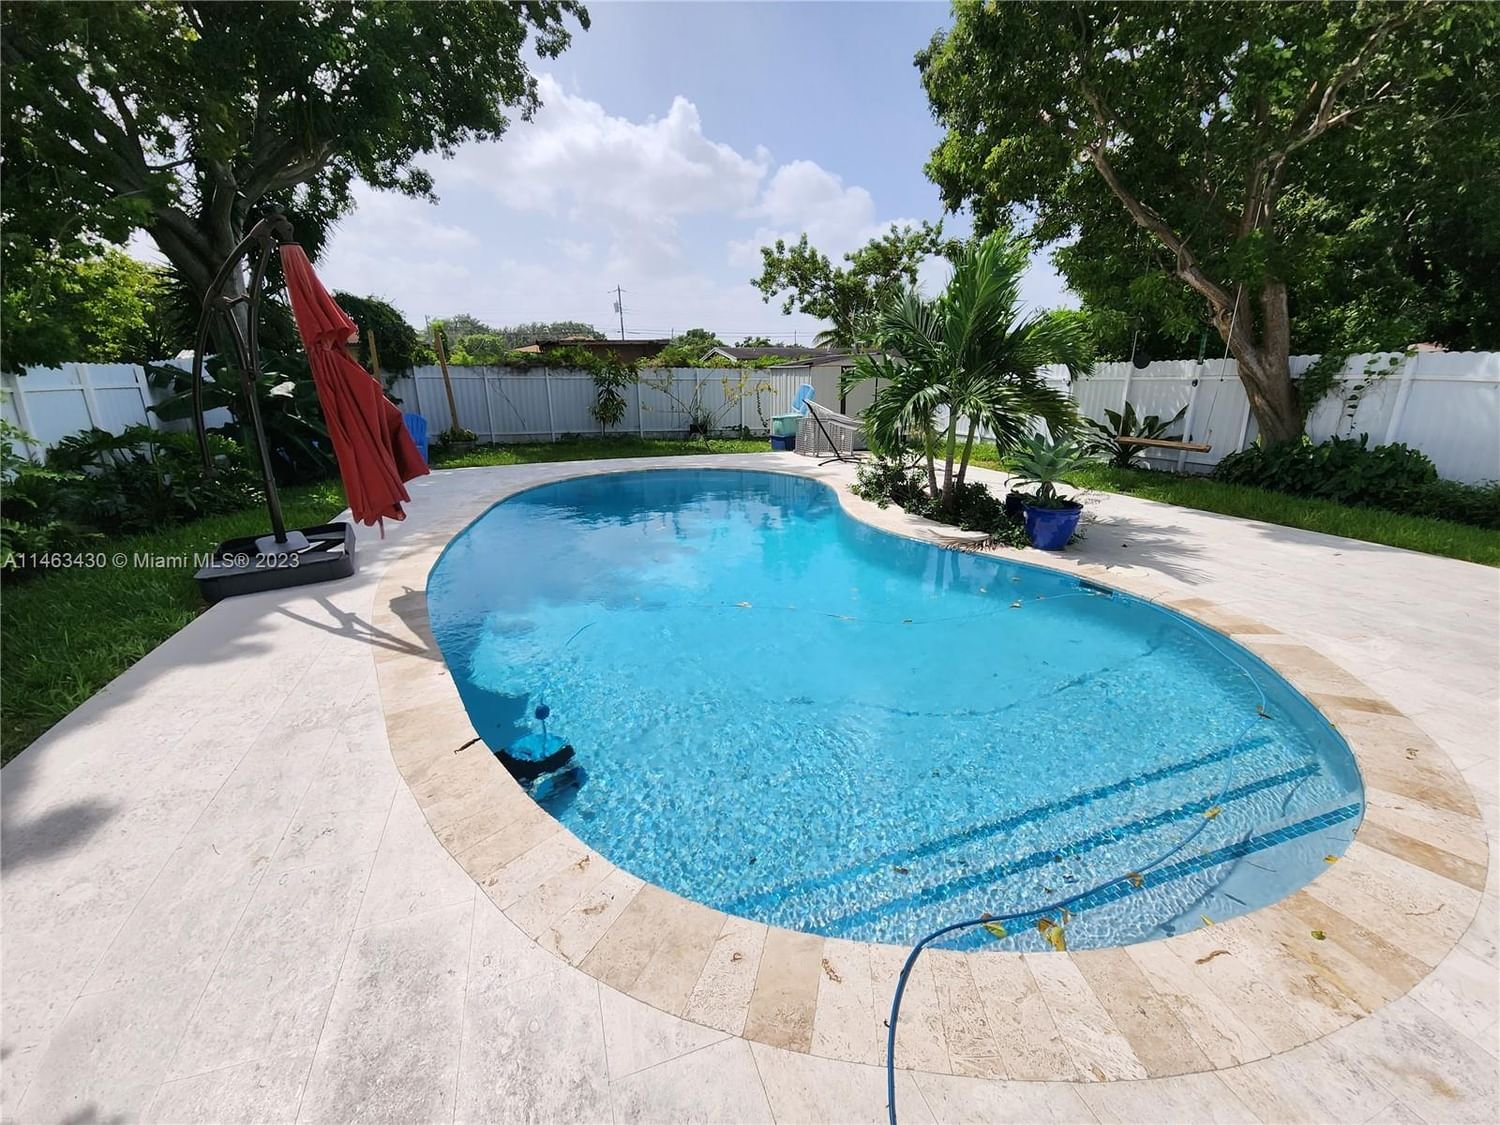 Real estate property located at 2120 66th St, Miami-Dade County, ORANGE RIDGE, Miami, FL